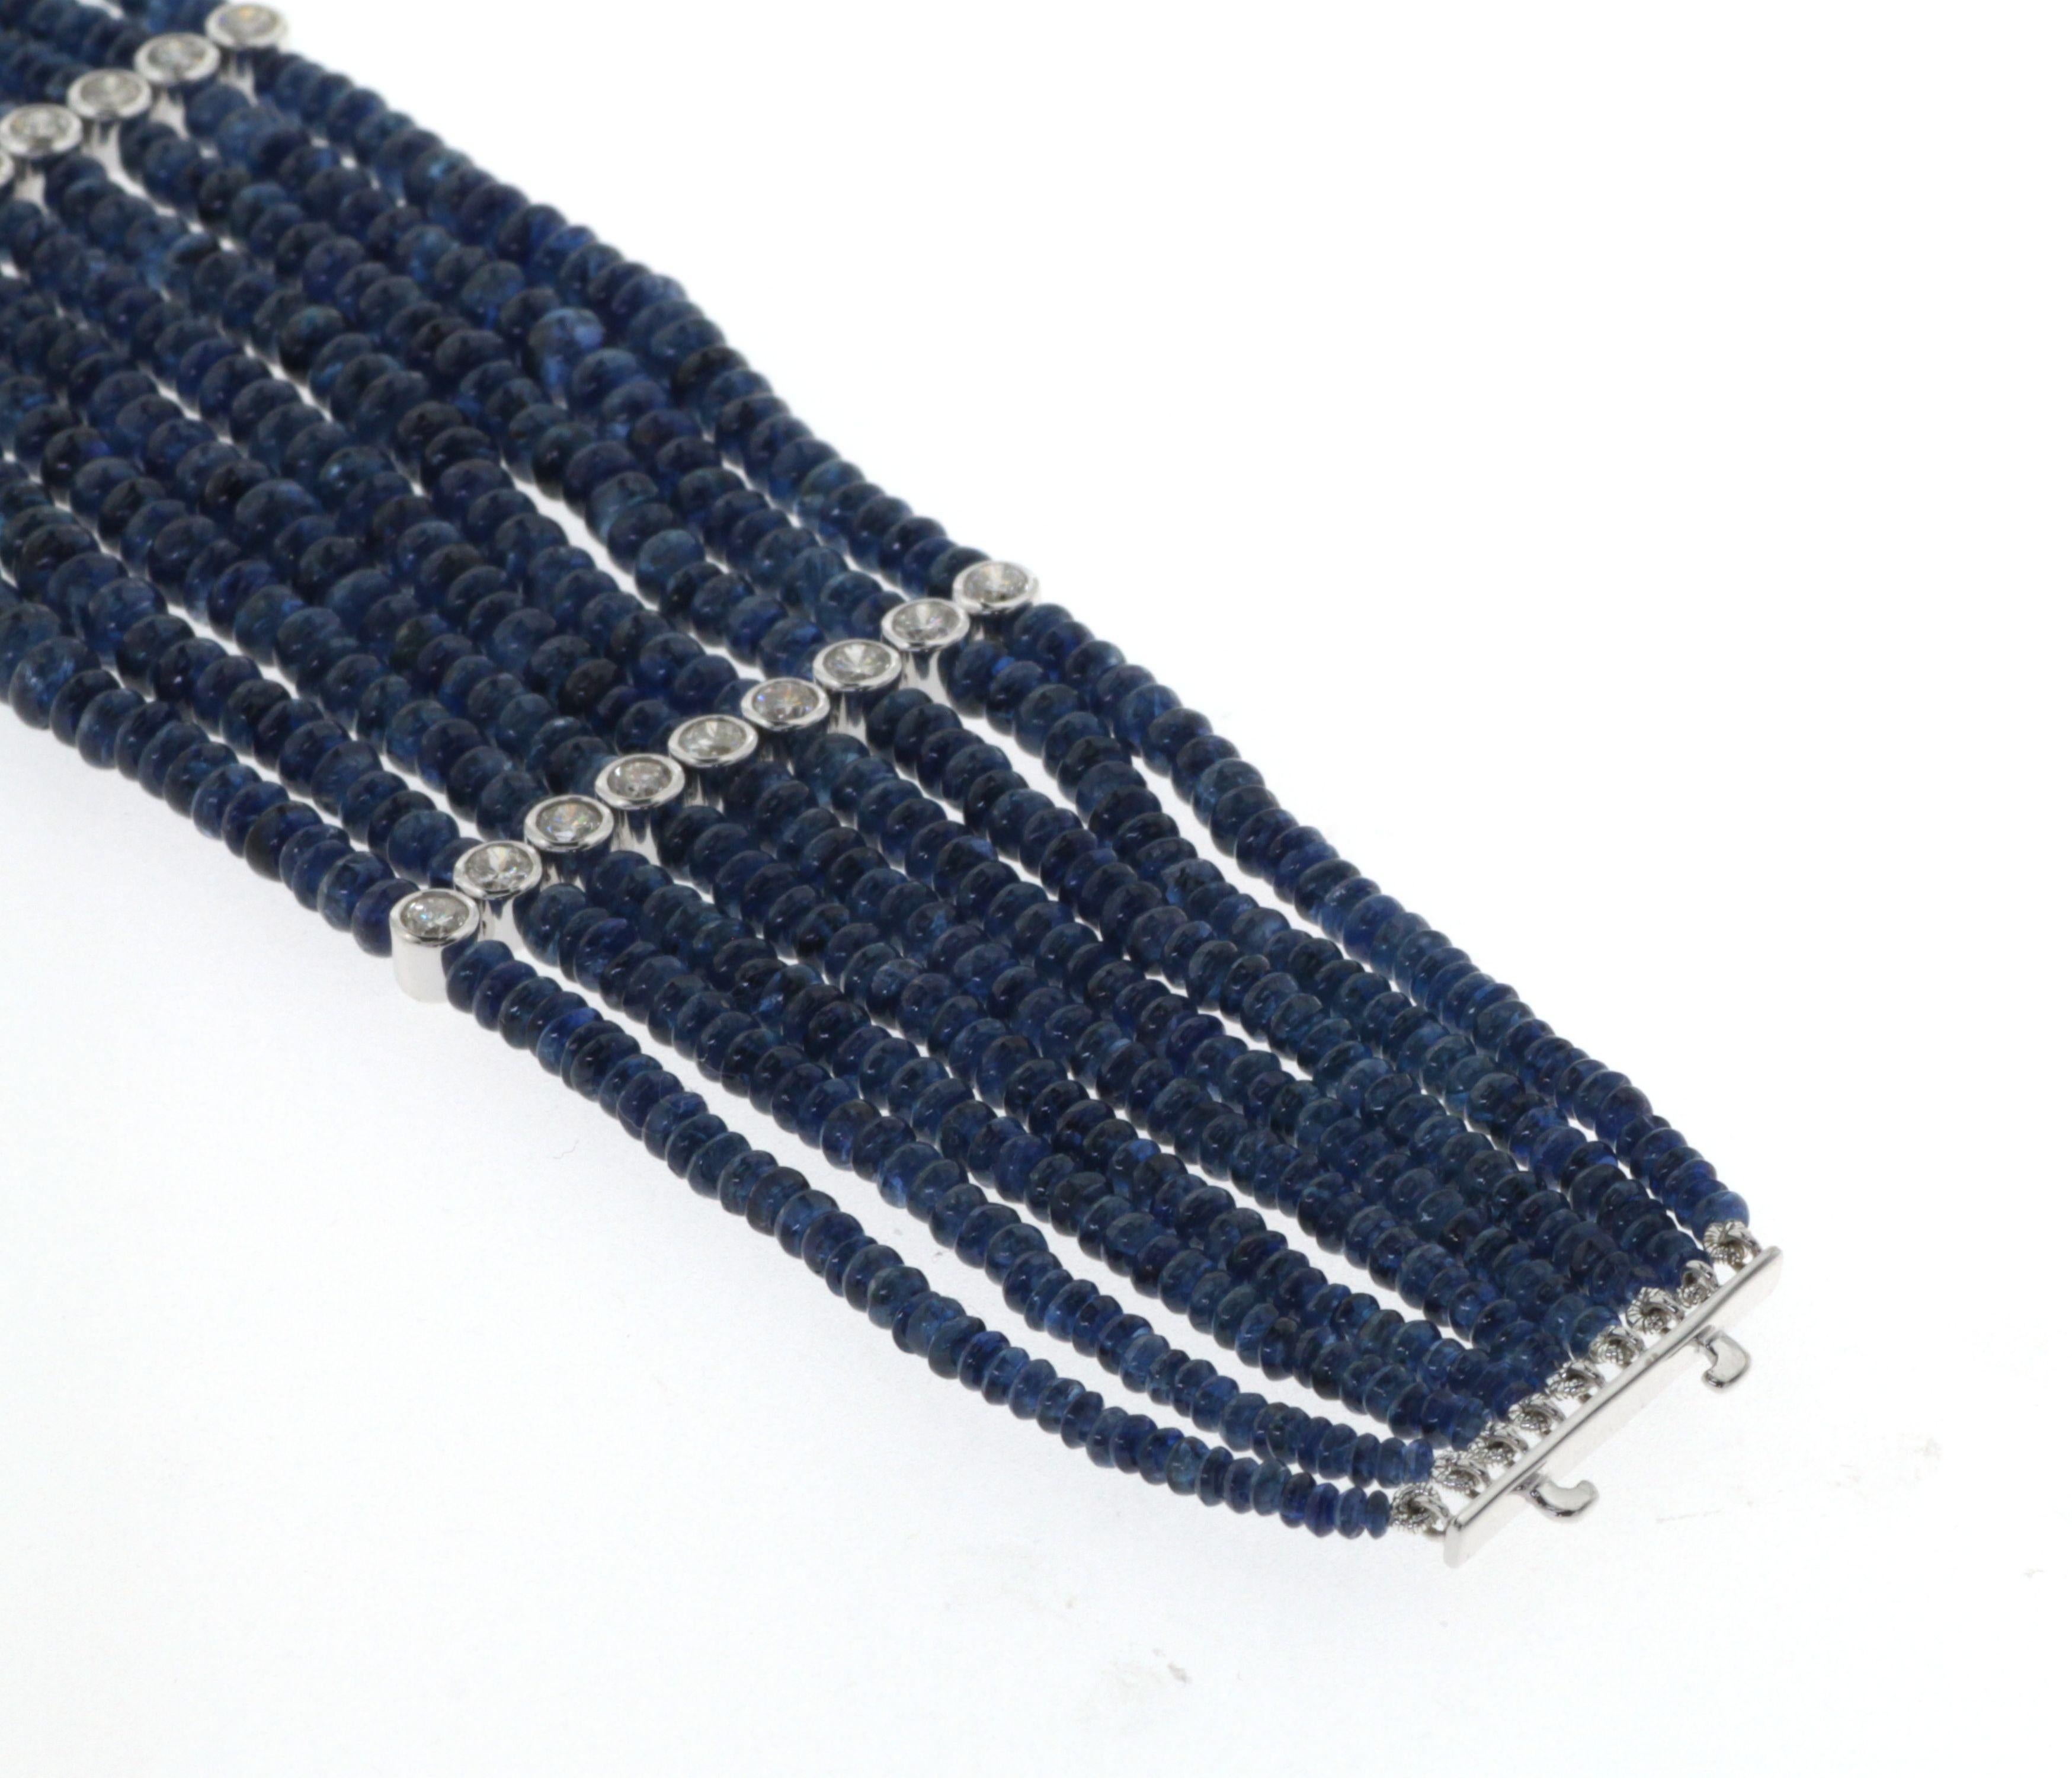 Blue Sapphire Beads Bracelet in 18 Karat White Gold 2